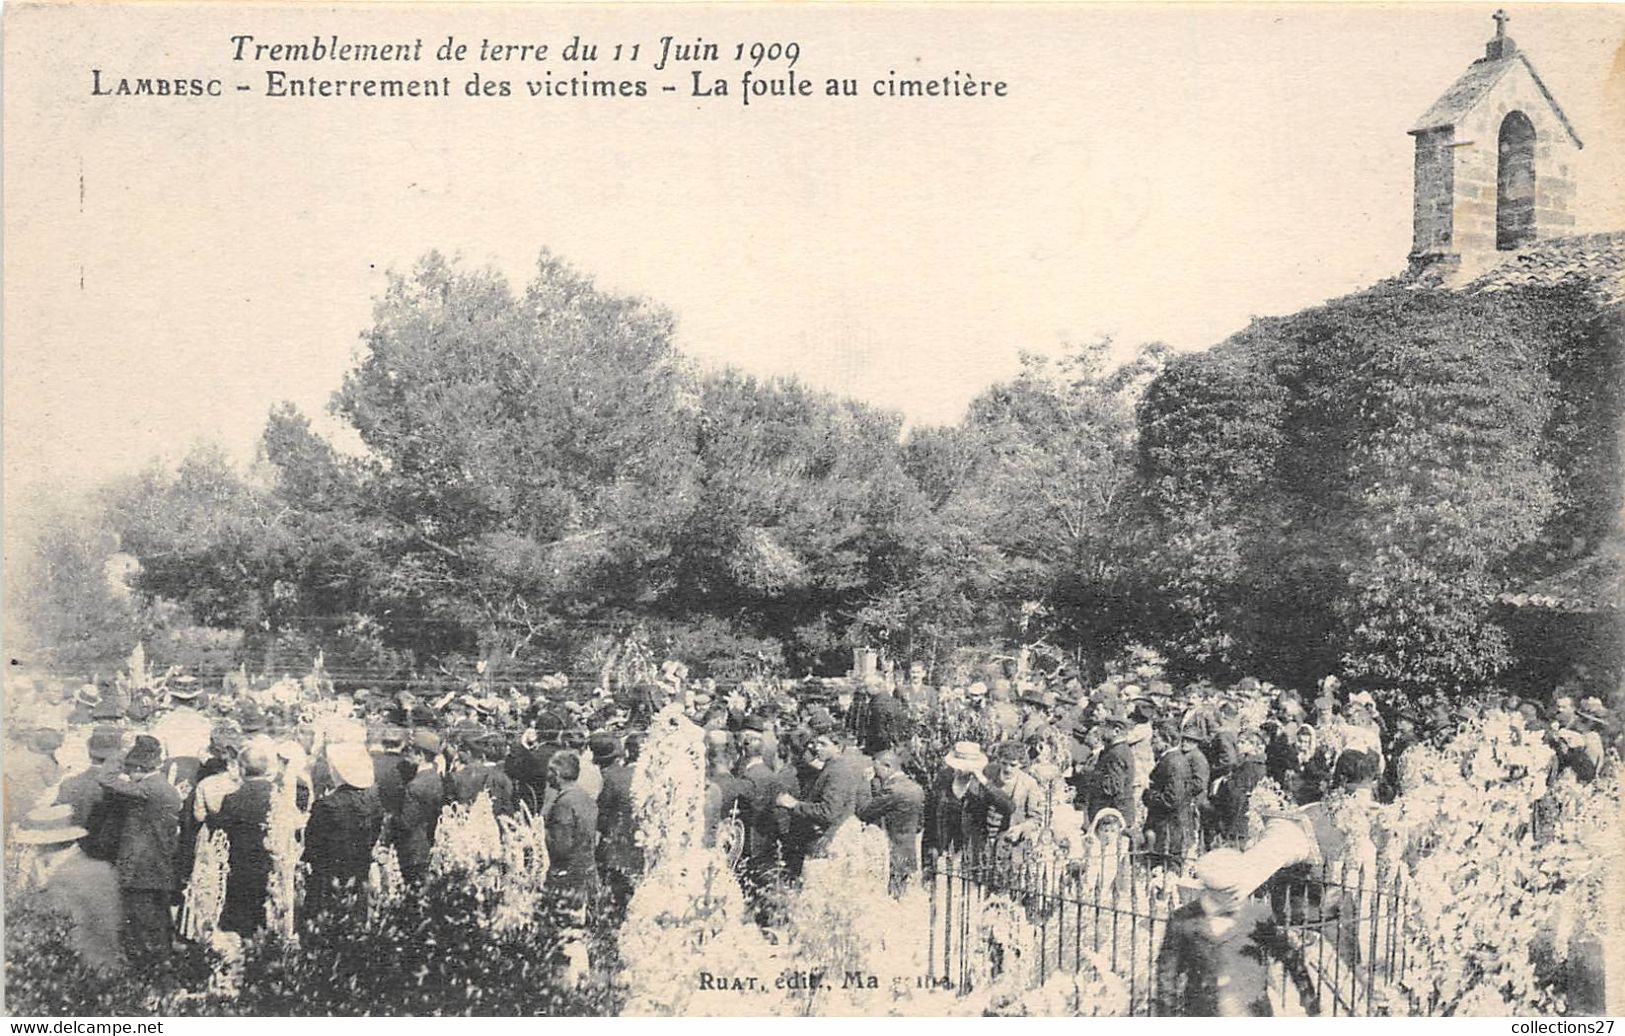 13-LAMBESC- TREMBLEMENT DE TERRE DU 11 JUIN 1909- ENTERREMENT DES VICTIMES LA FOULE AU CIMETIERE - Lambesc